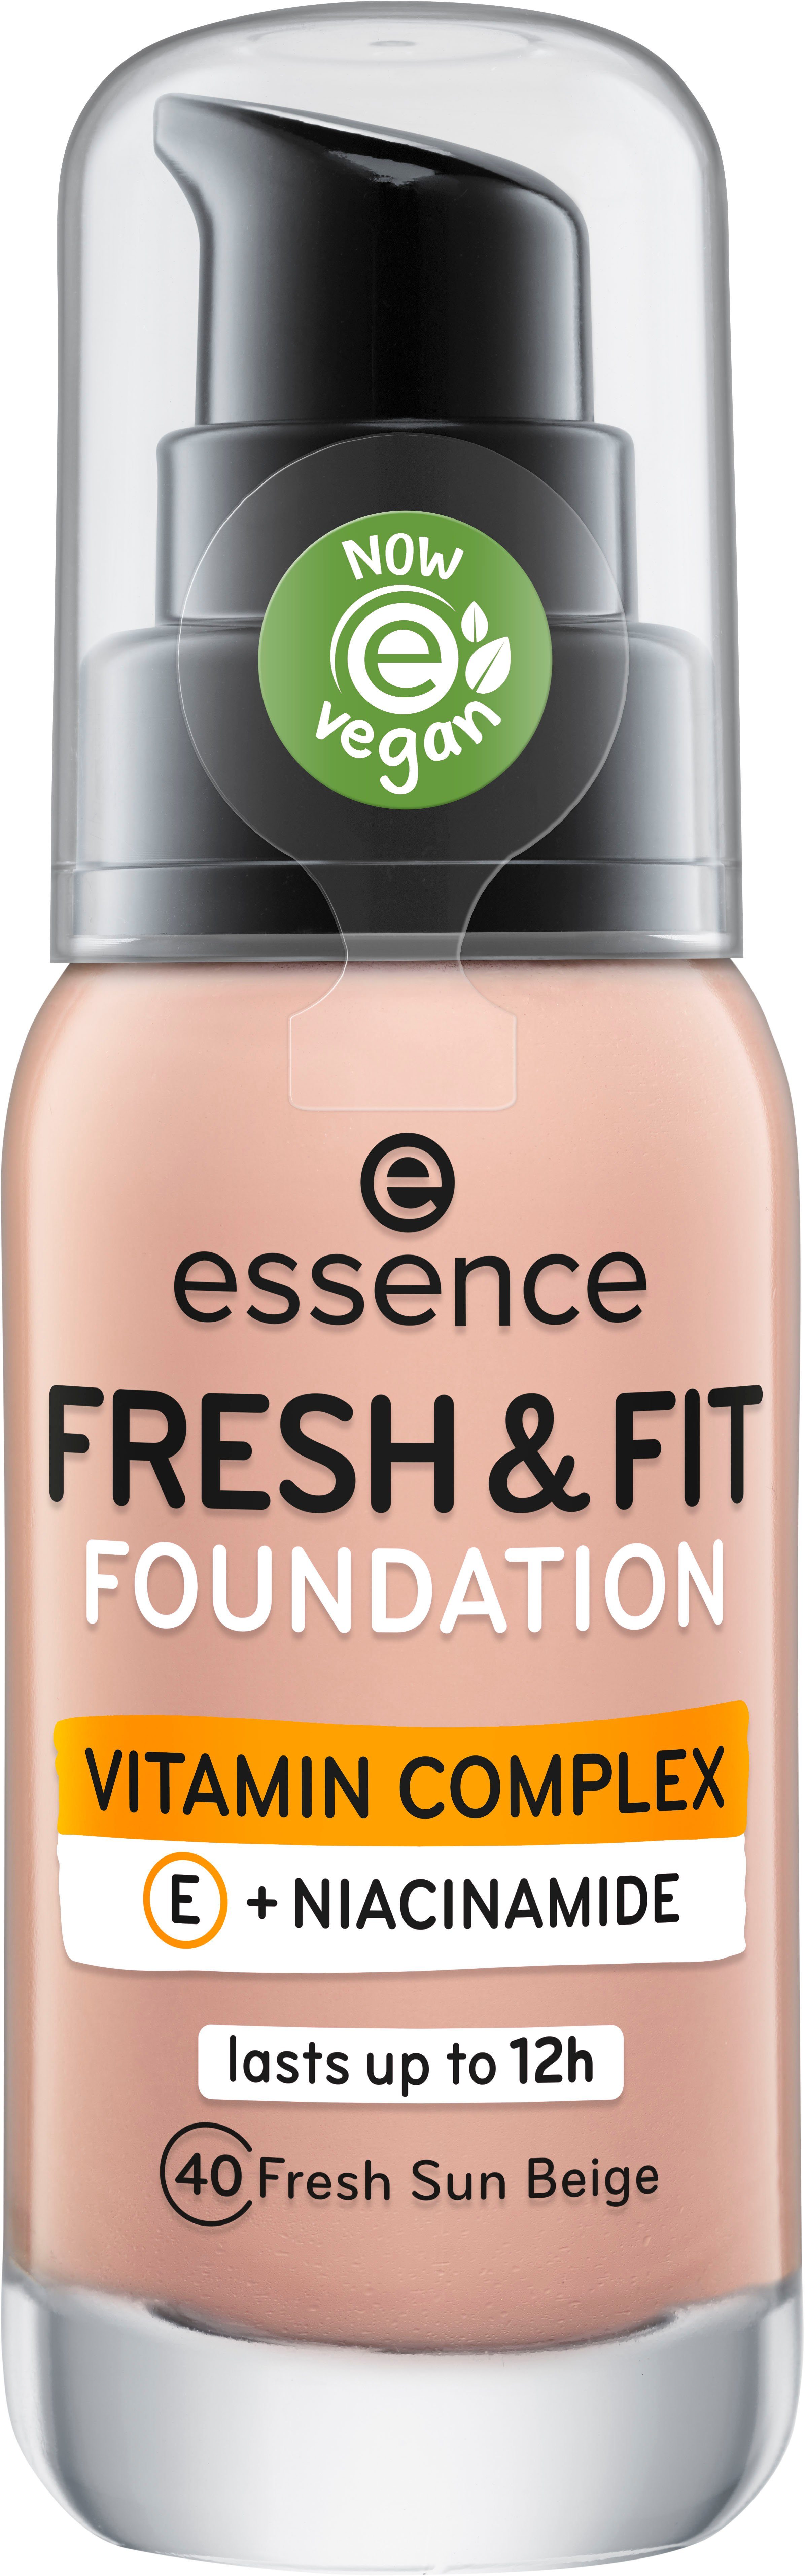 Foundation FOUNDATION, Essence sun beige FRESH FIT fresh 3-tlg. &